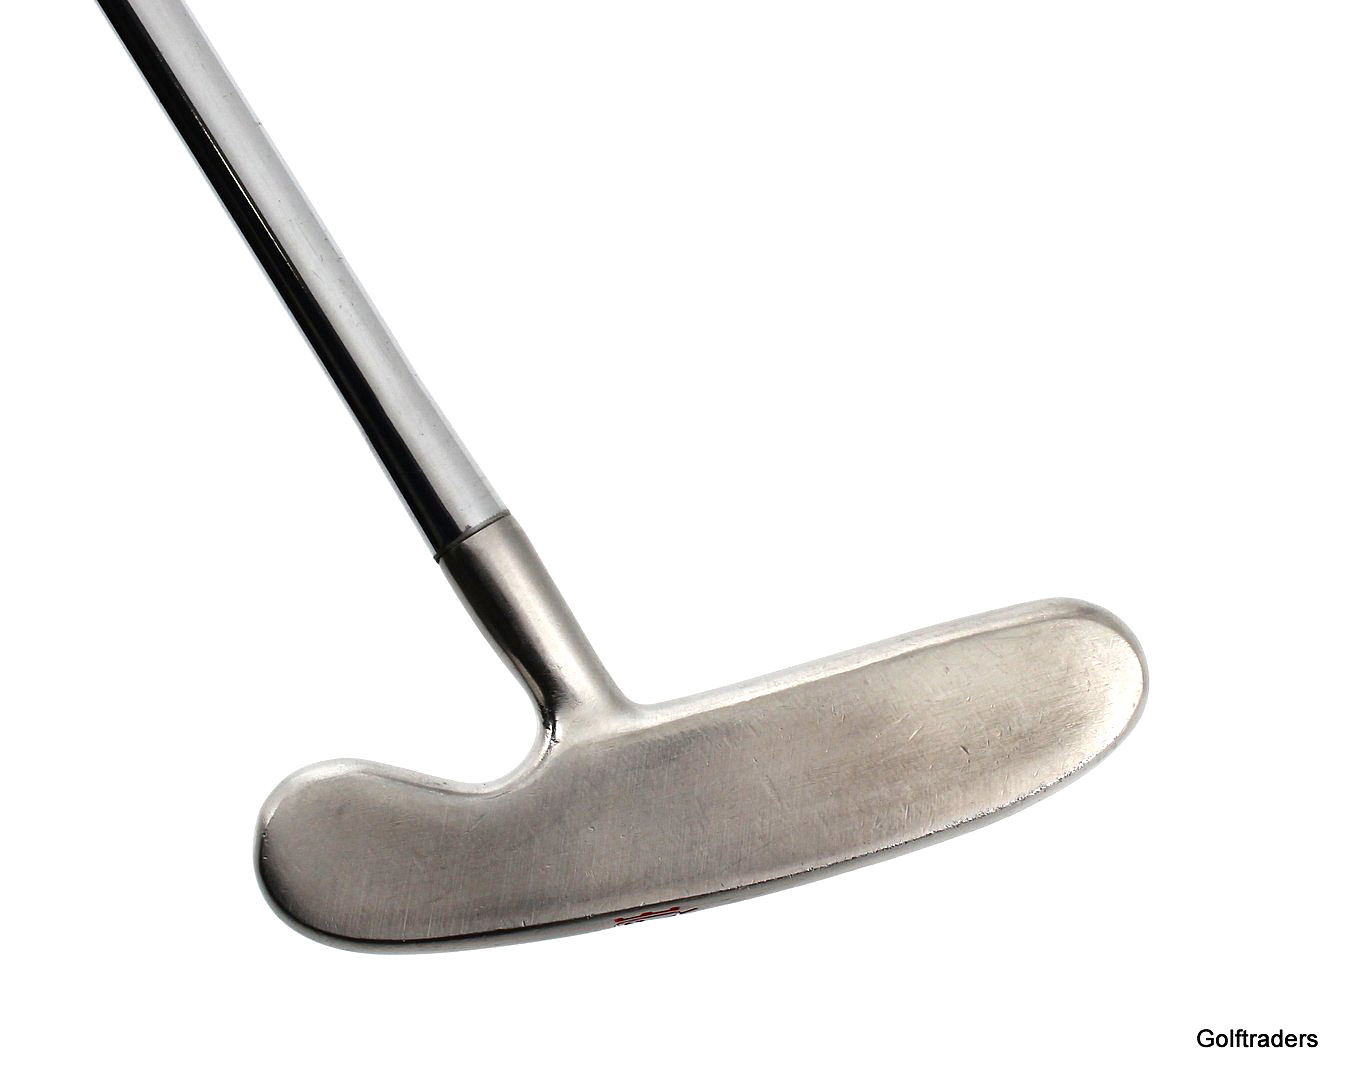 Brosnan Golf Stainless Blade Putter 35.5